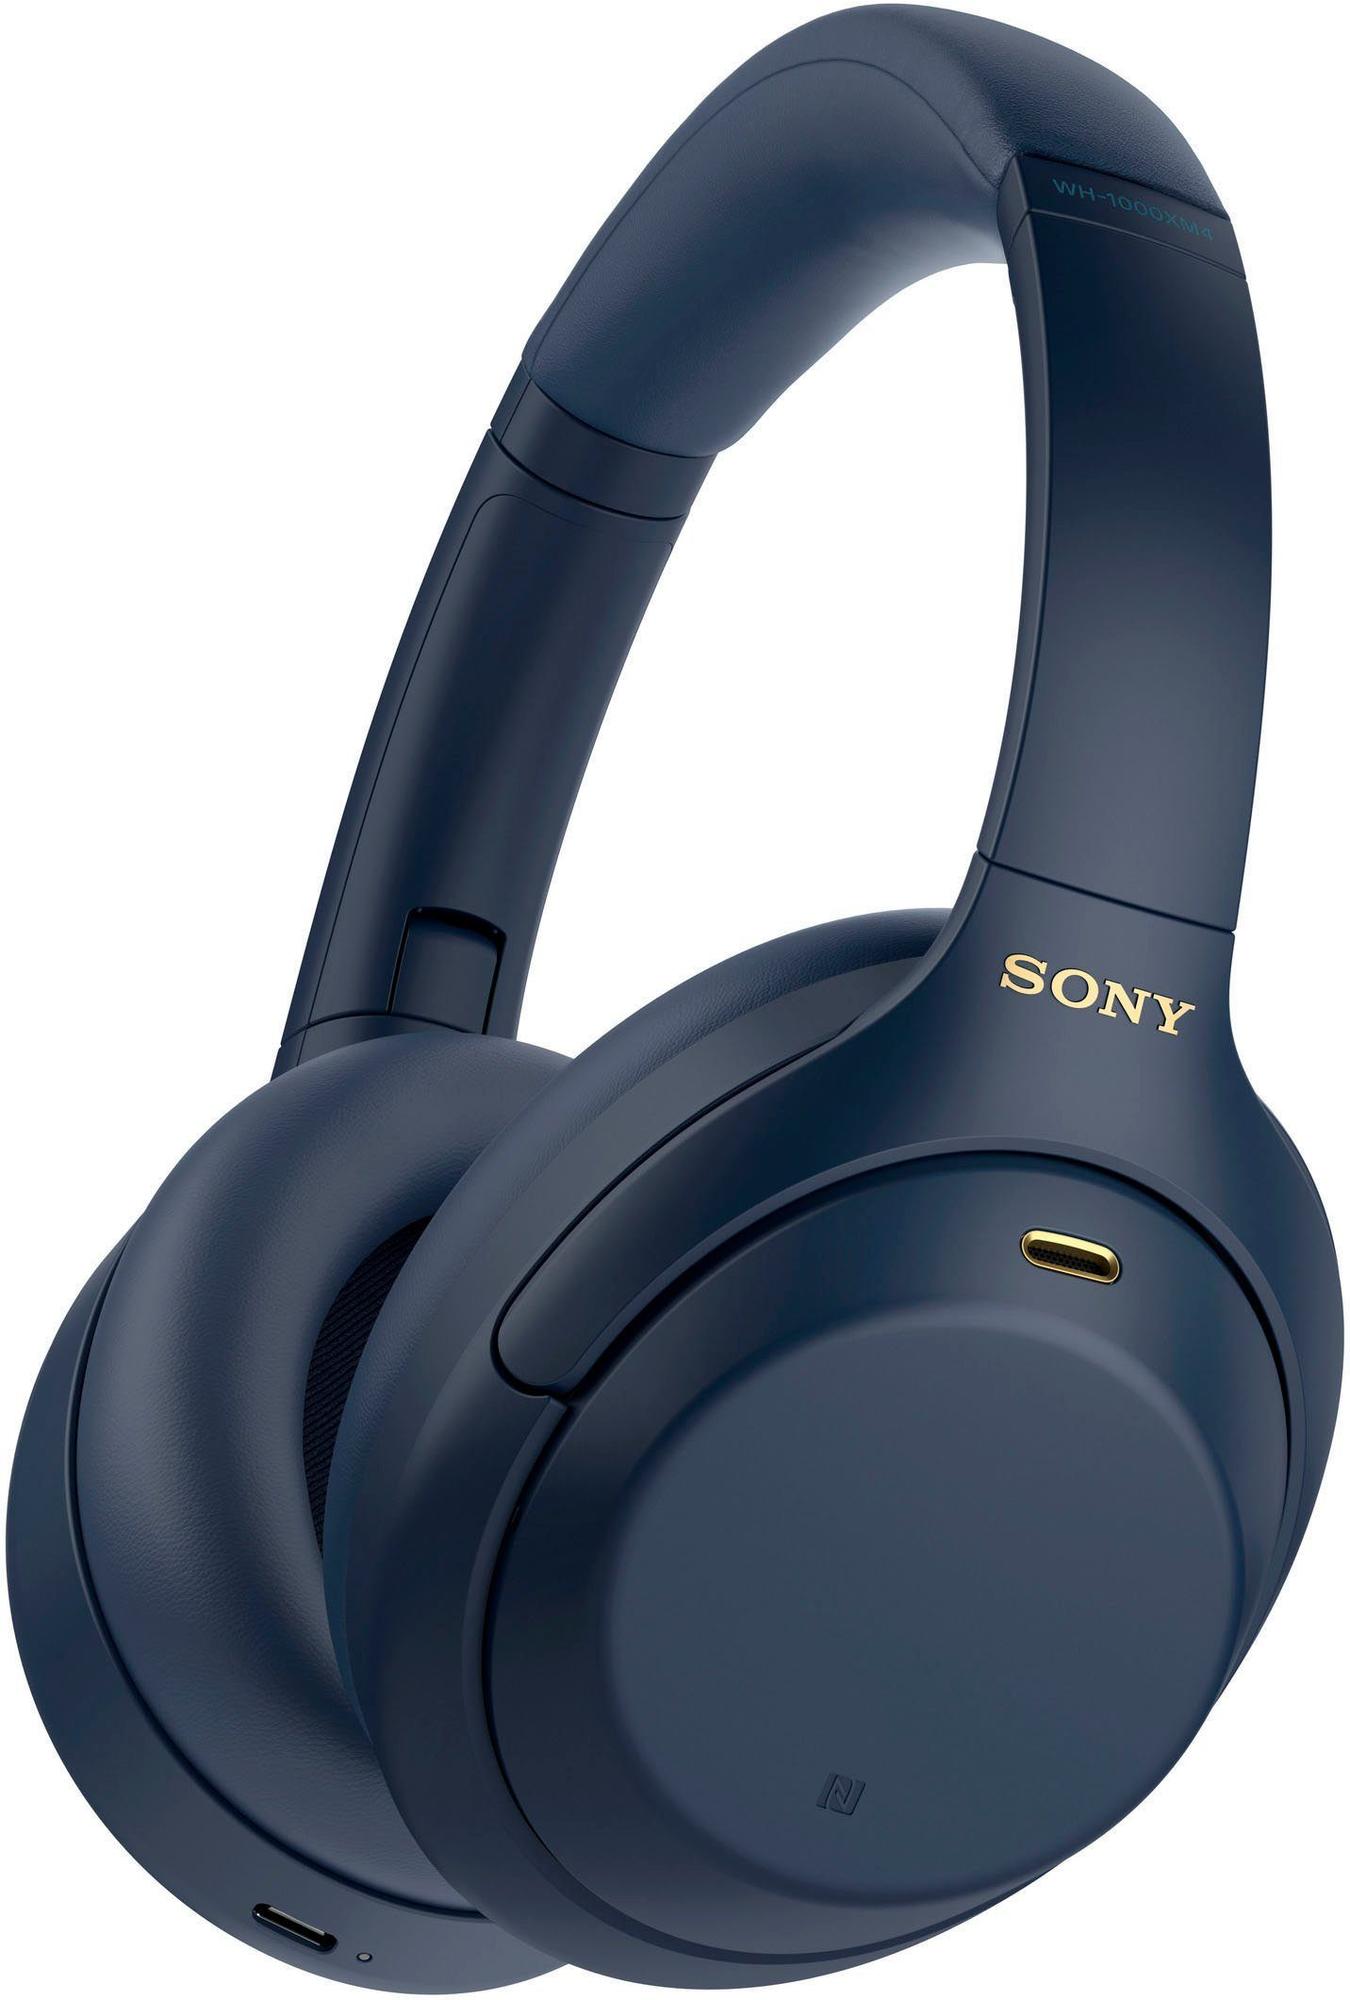 Sony WH-1000XM4 blau - ab € Test 239,00